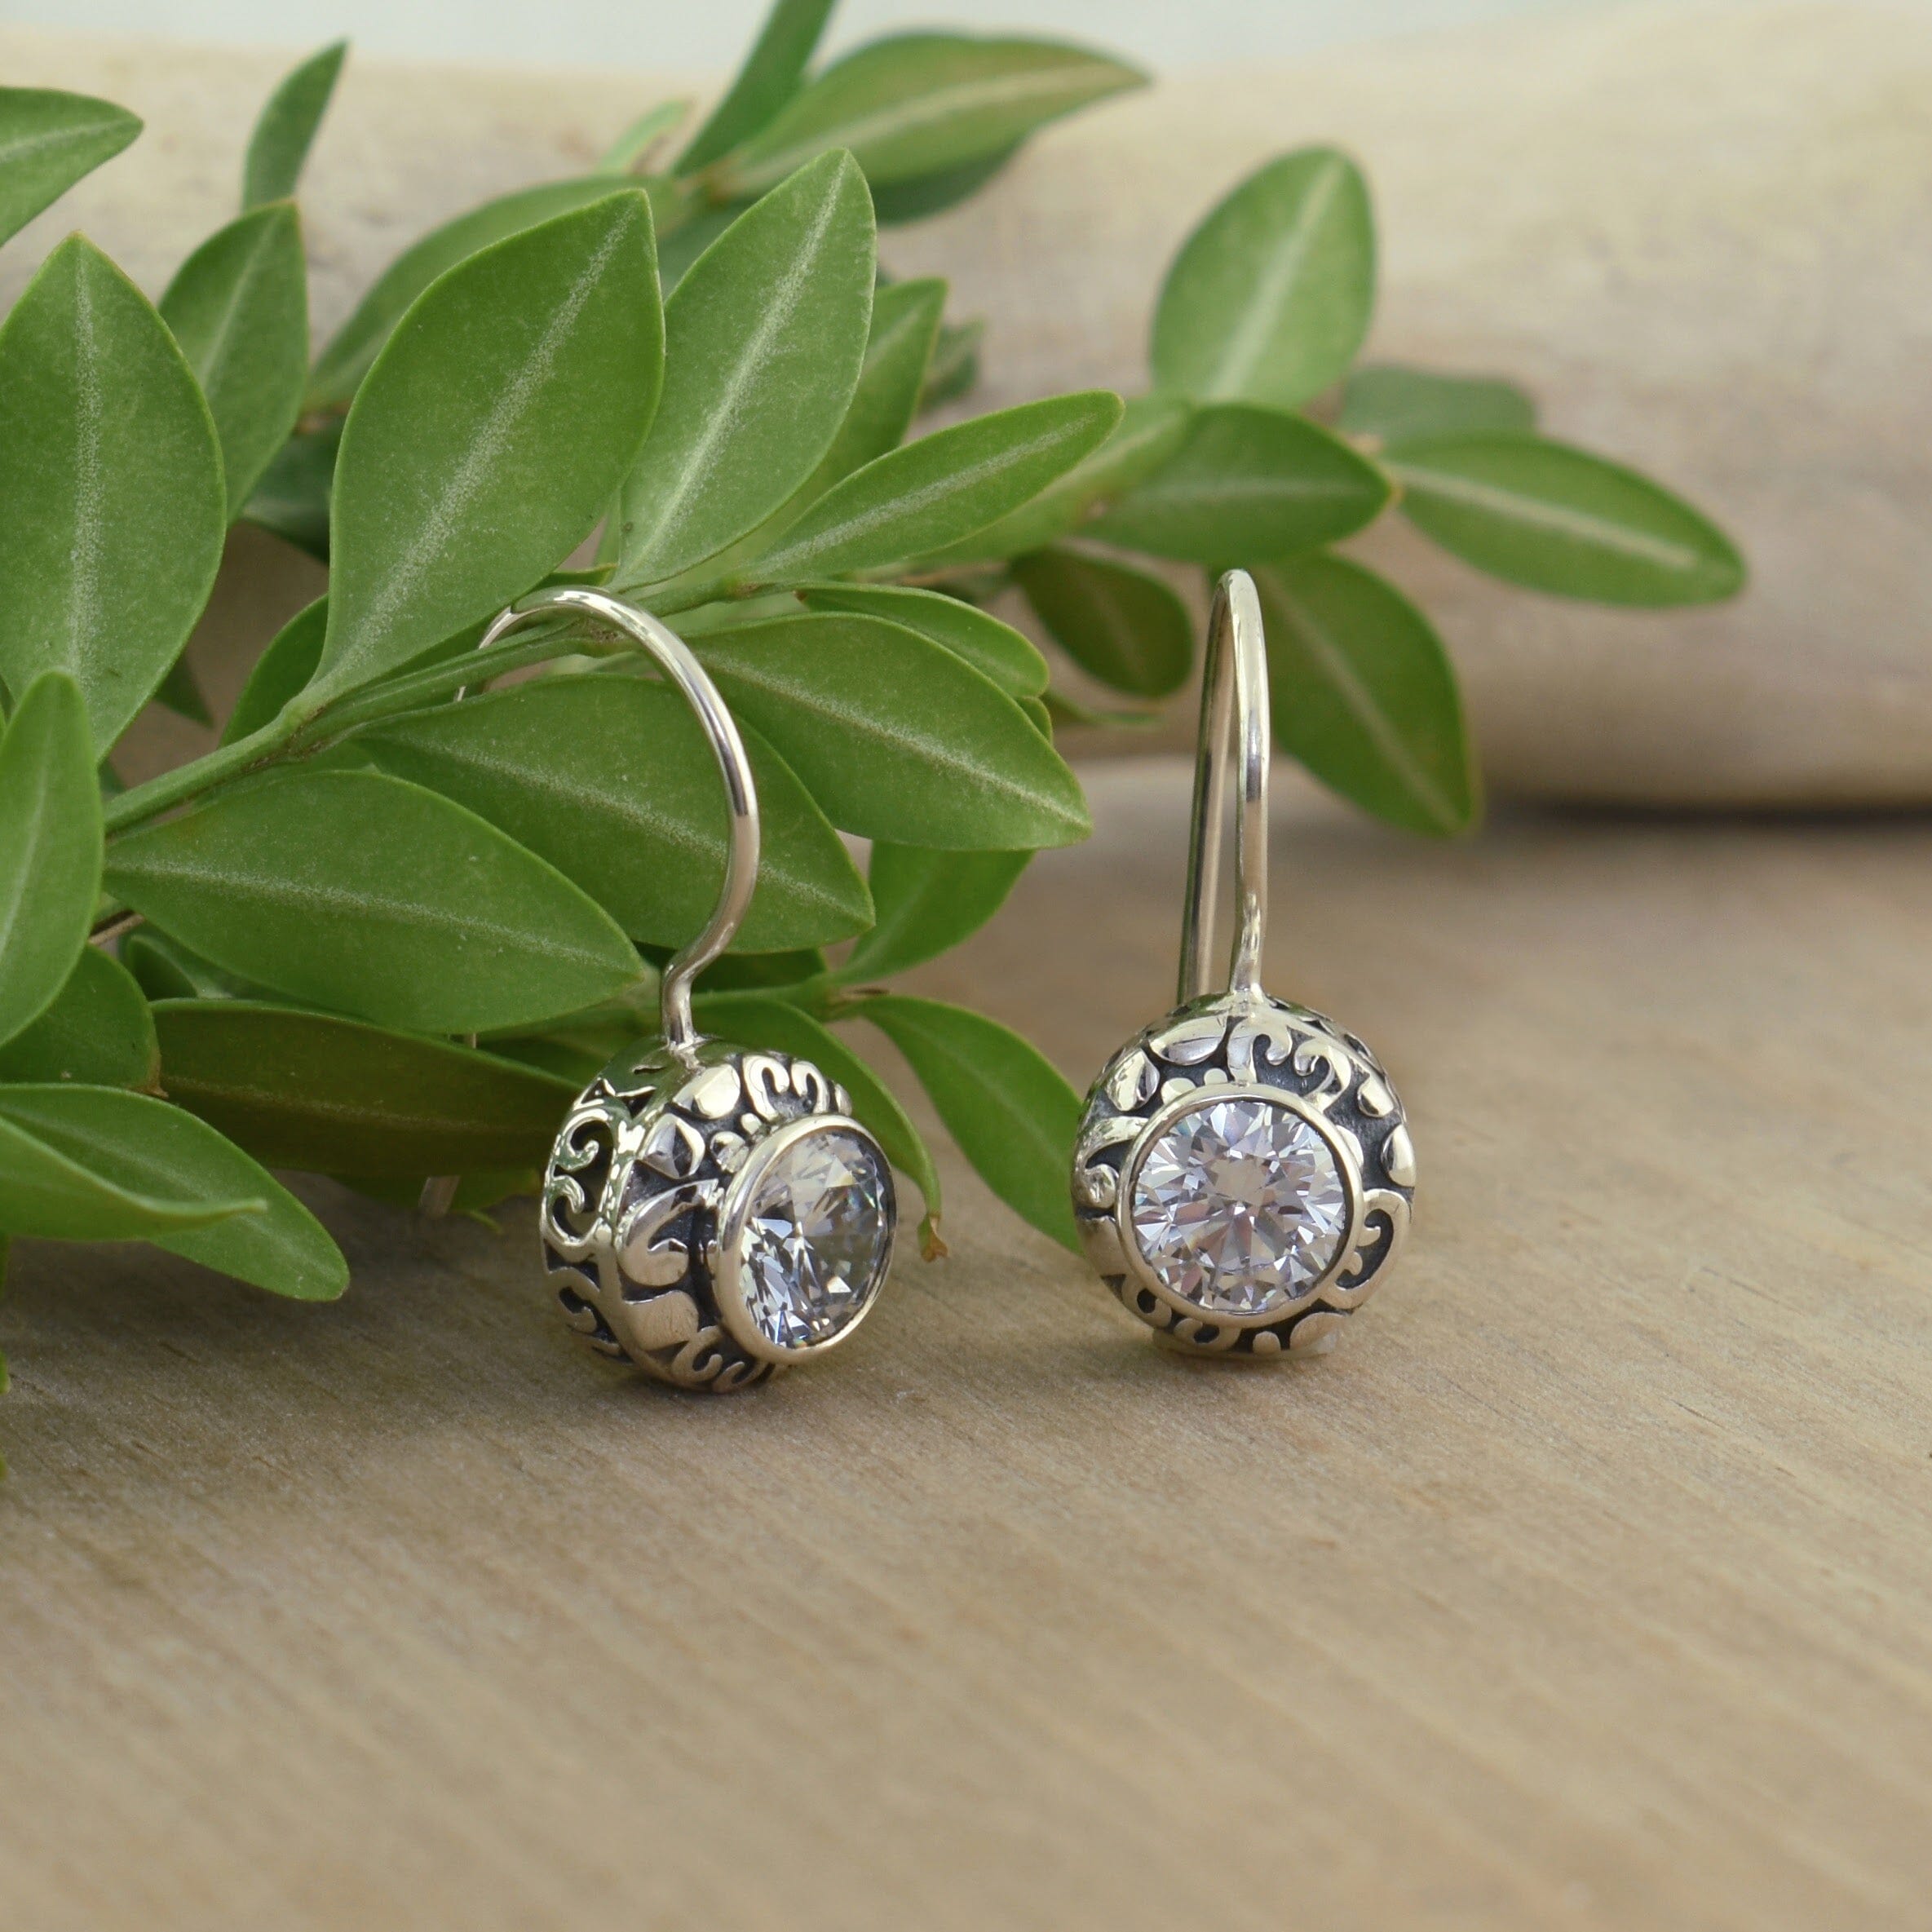 dainty .925 sterling silver wire hook earrings featuring cz